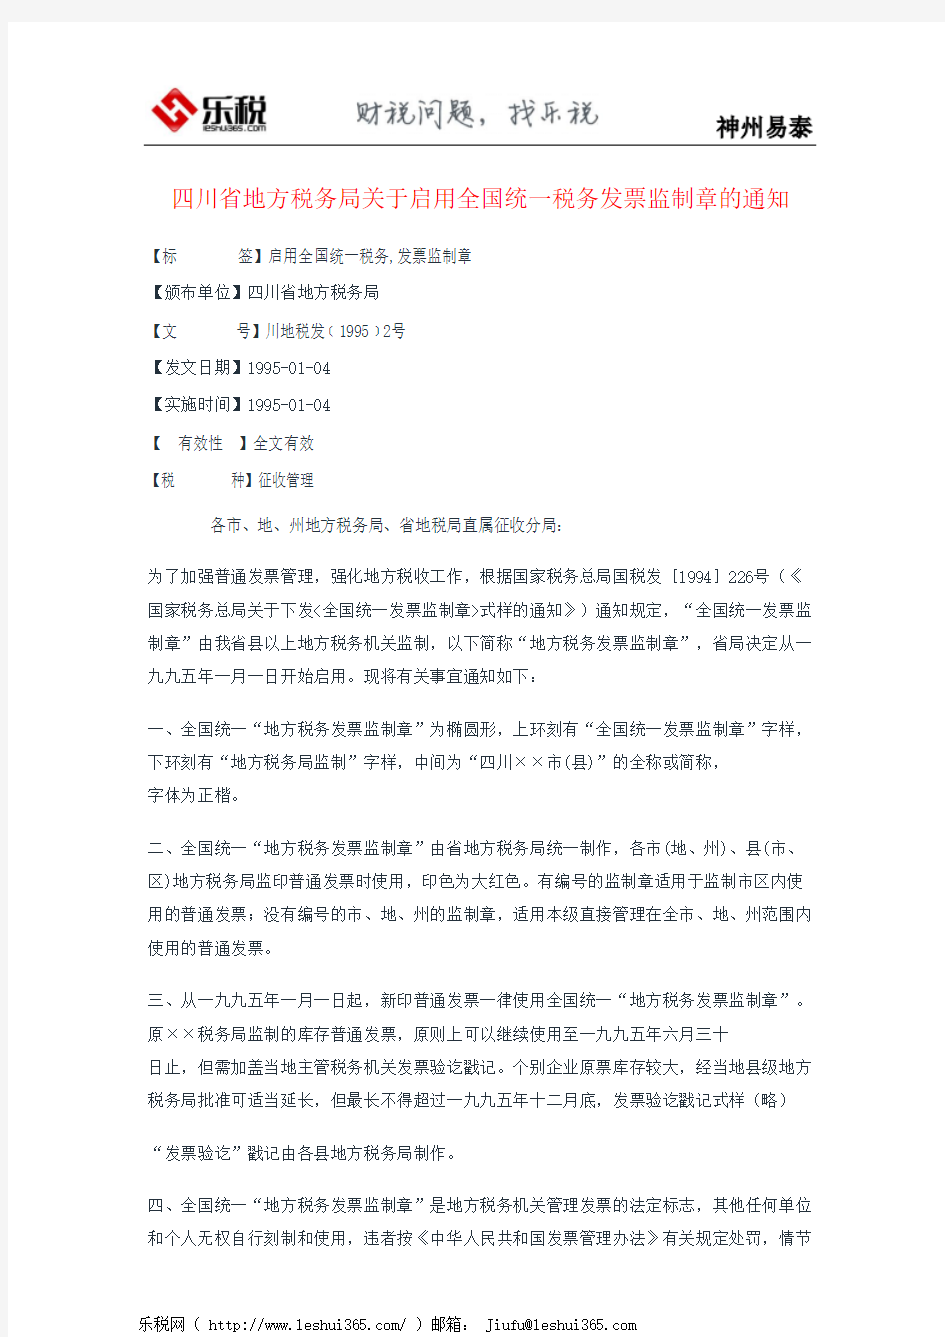 四川省地方税务局关于启用全国统一税务发票监制章的通知